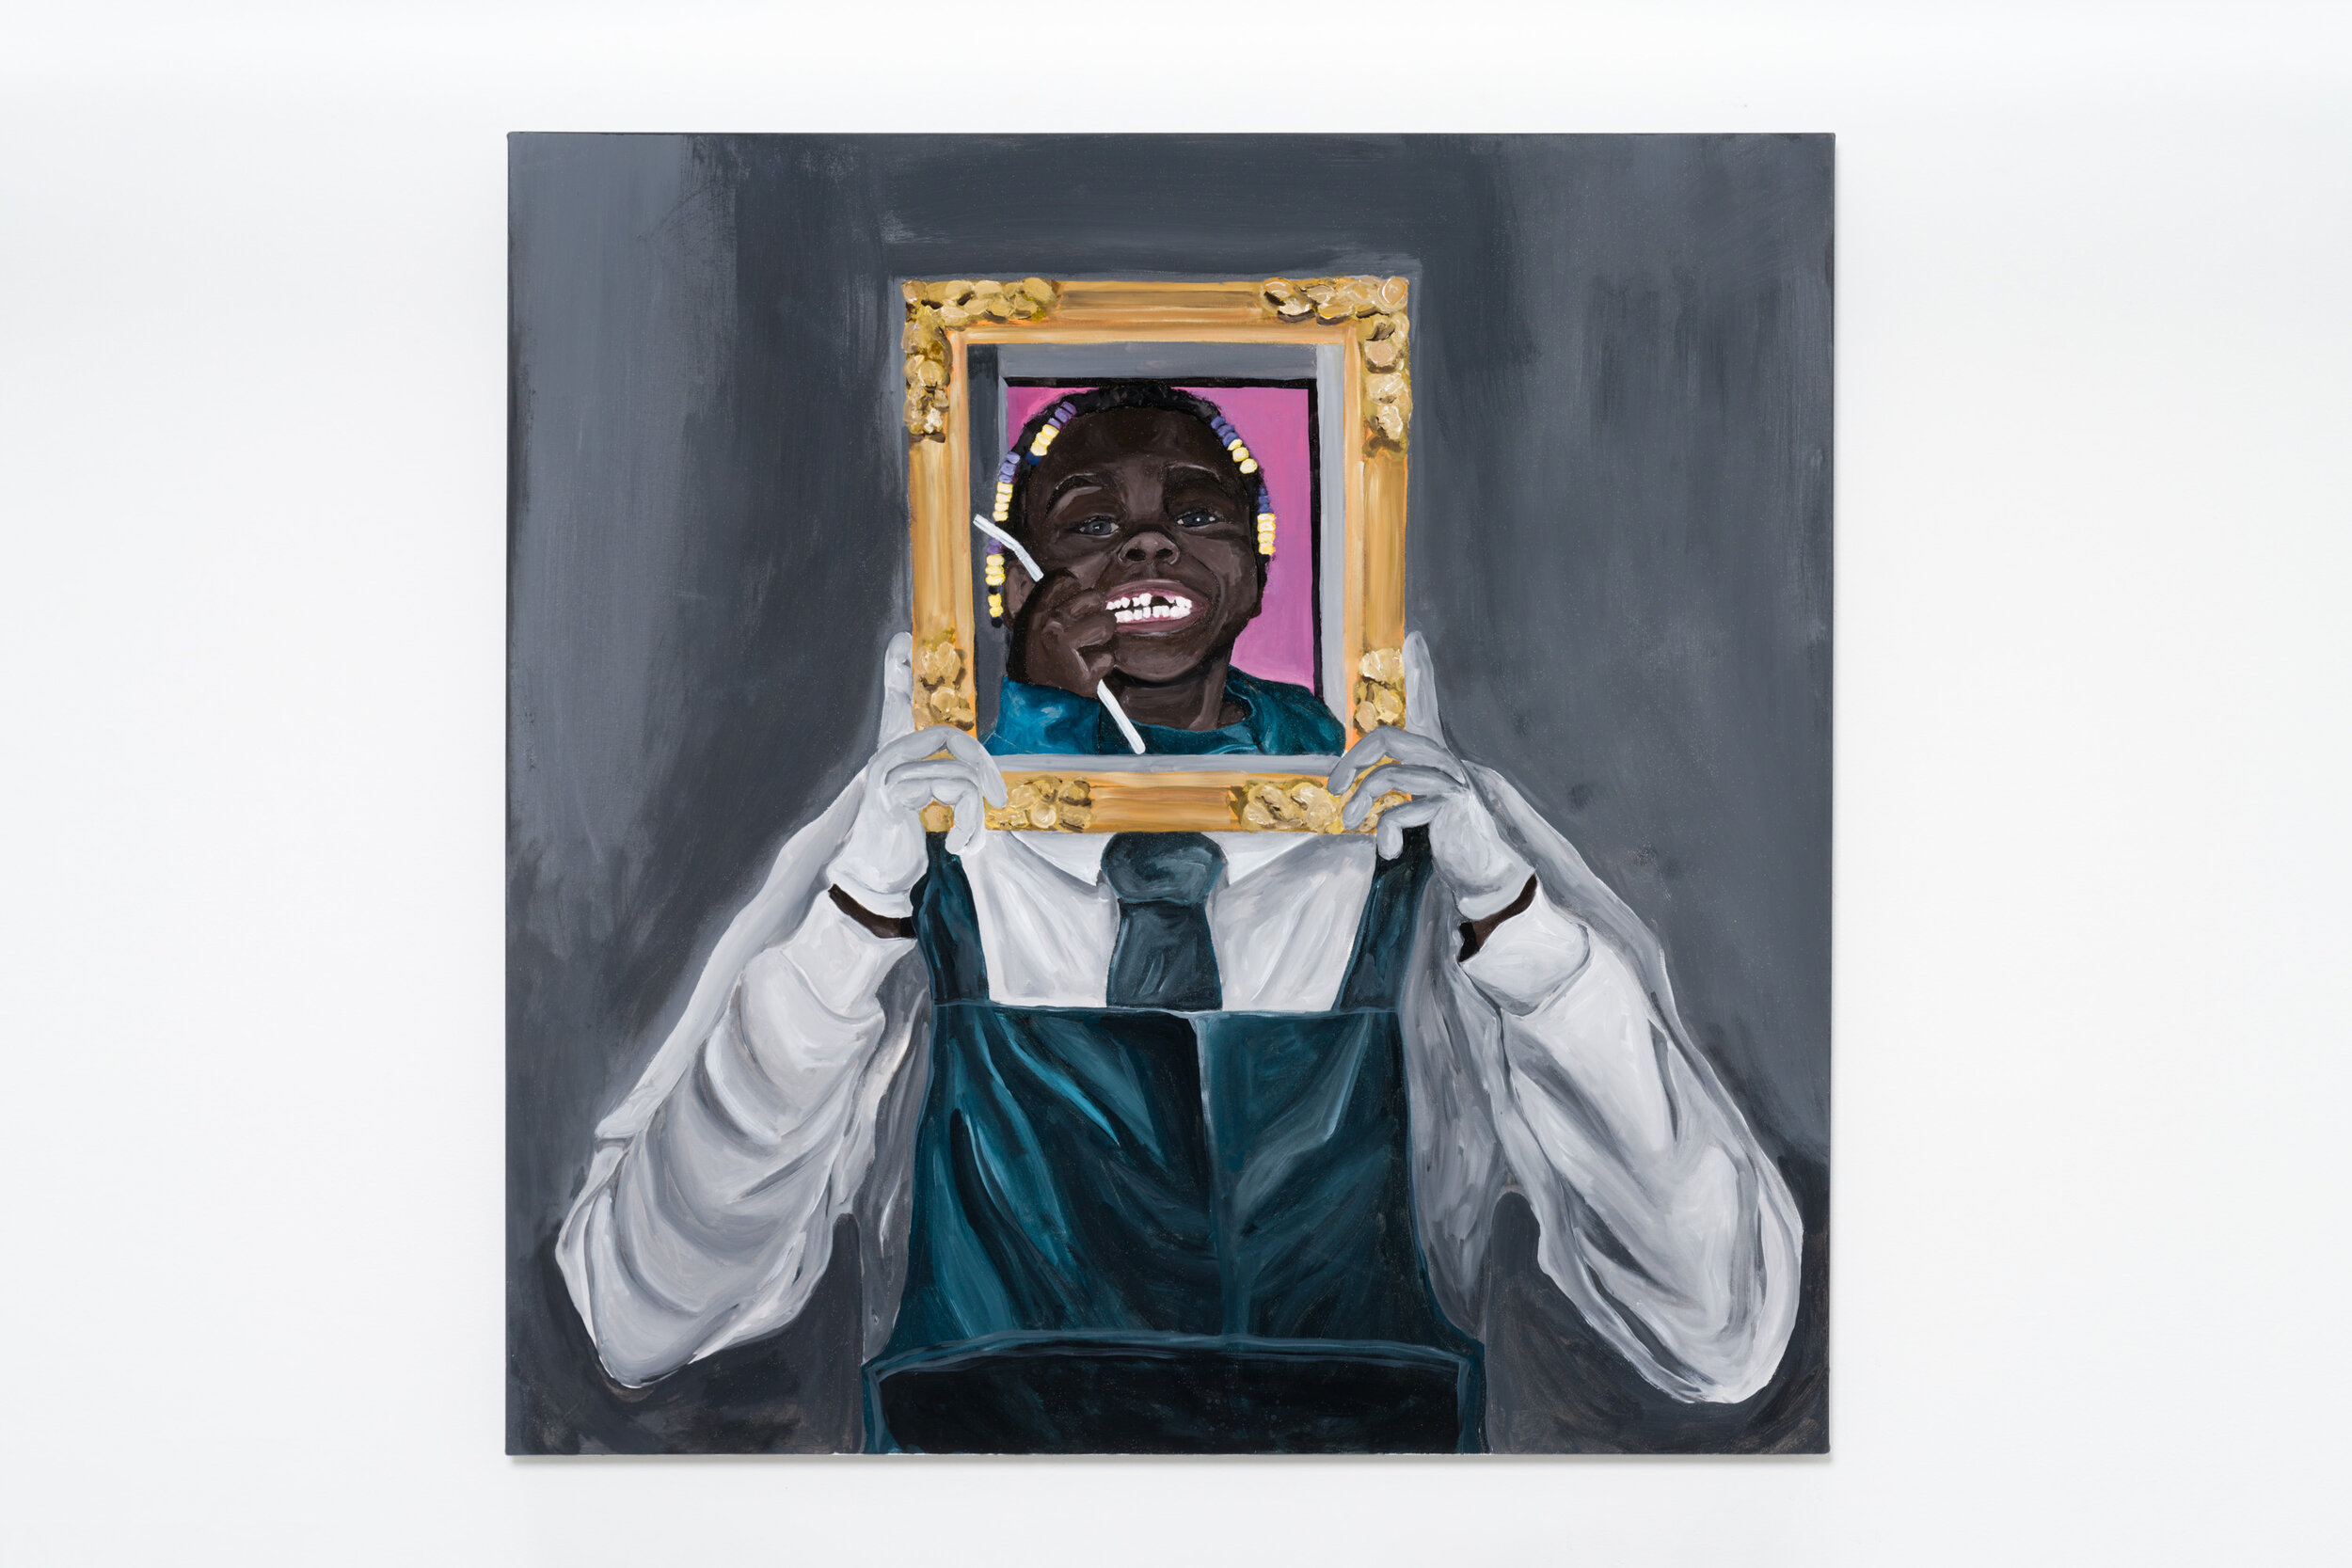  Glenn Hardy, Baby Teef, Acrylic on canvas, 48 x 48 inches, 2021 